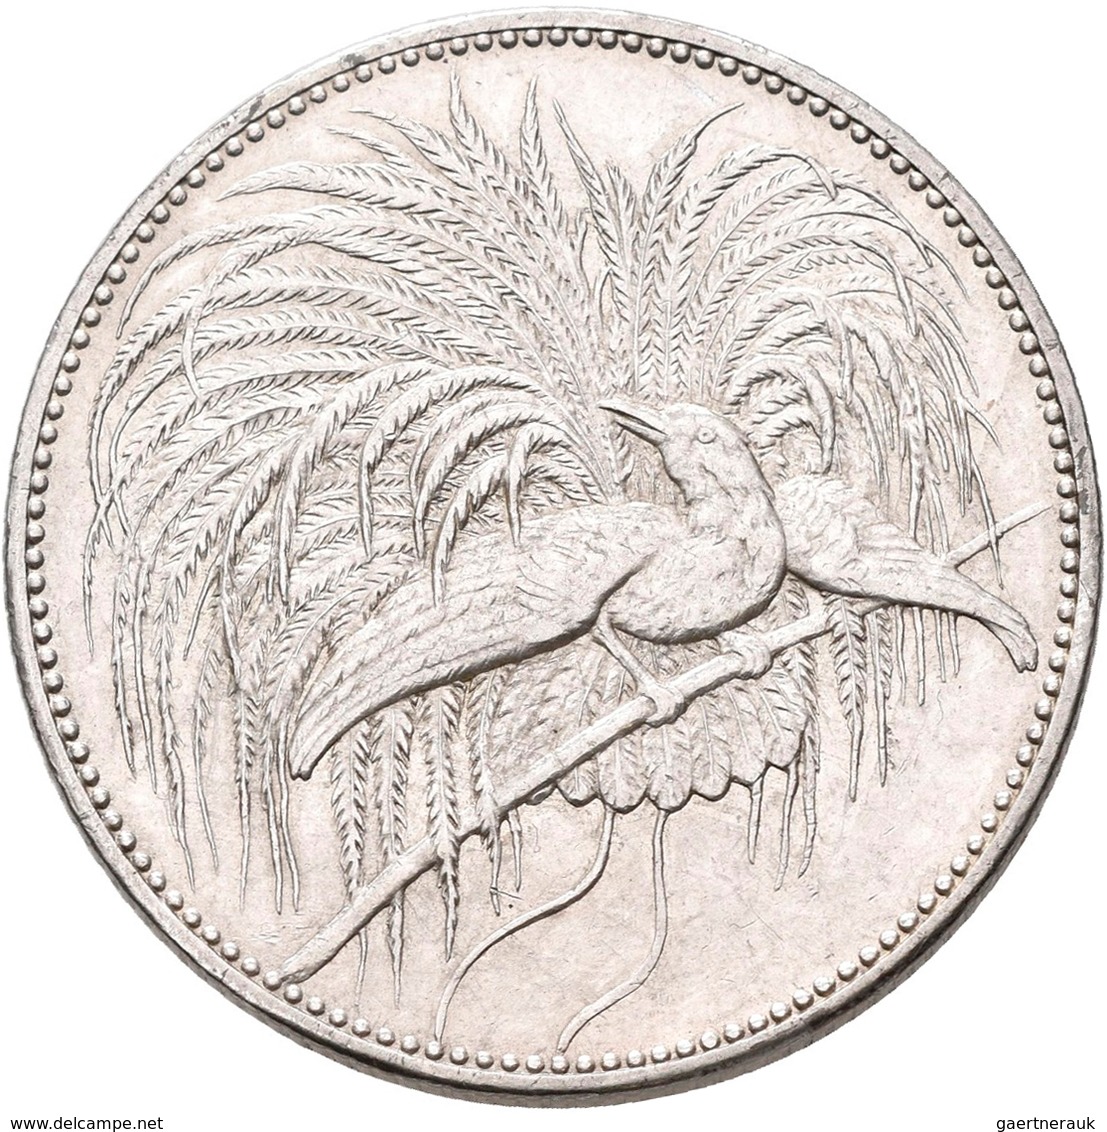 Deutsch-Neuguinea: 2 Neu-Guinea Mark 1894 A, Paradiesvogel, Jaeger 706, Kratzer, Sehr Schön - Vorzüg - Nouvelle Guinée Allemande